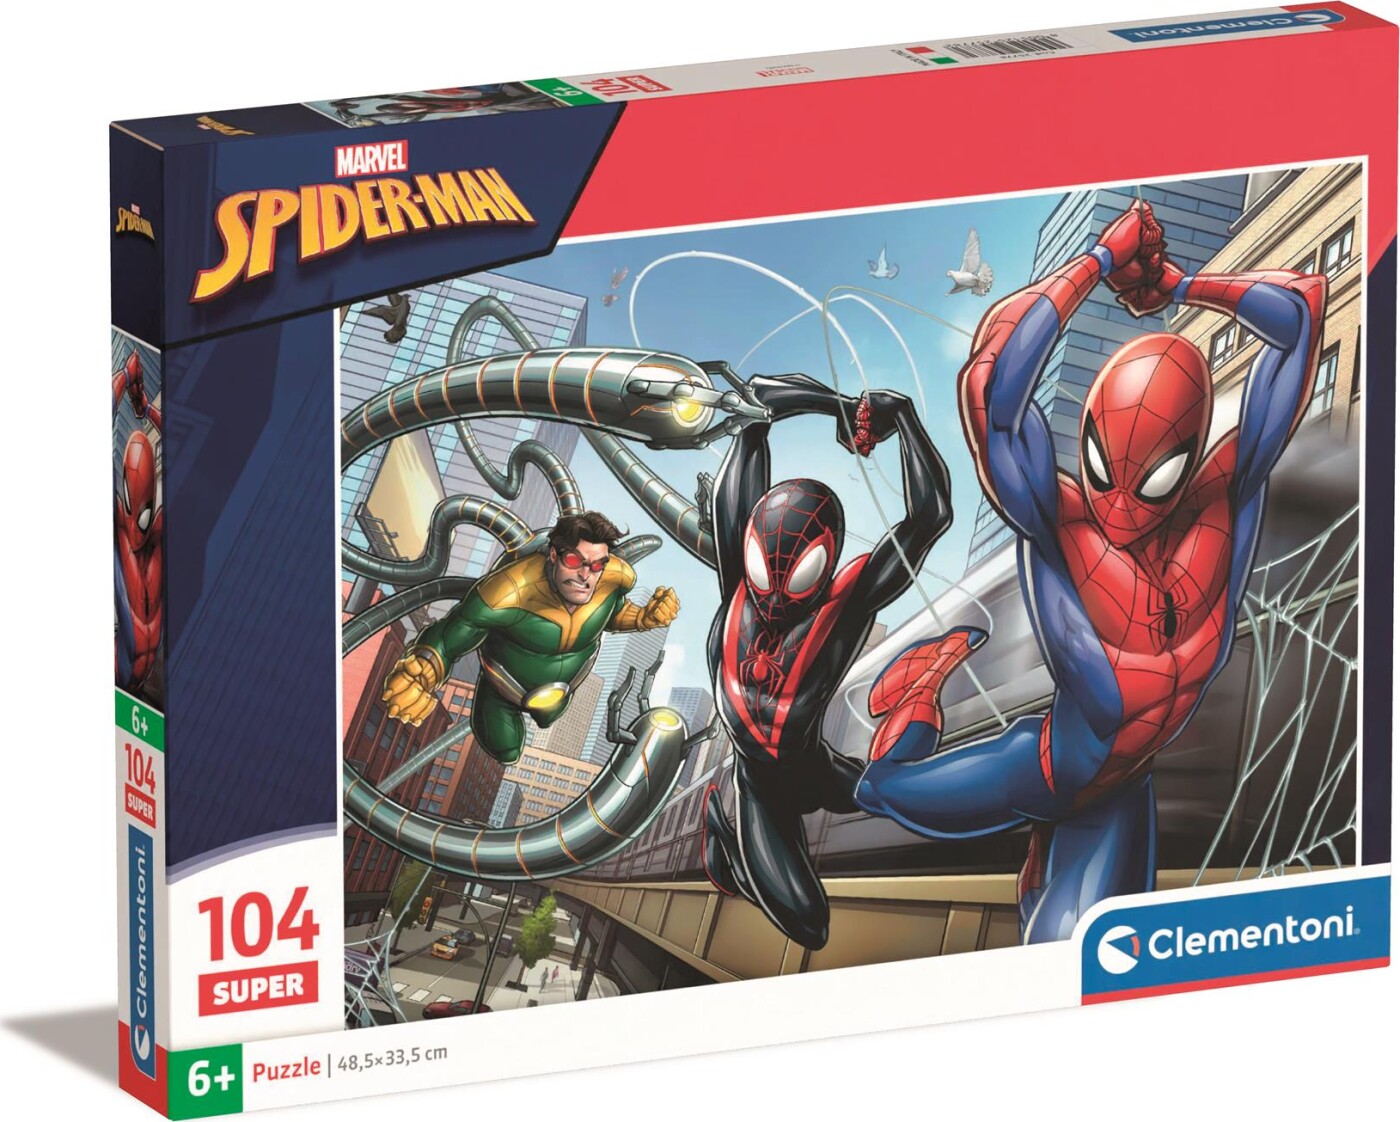 Se Spiderman Puslespil - Marvel - Super - 104 Brikker - Clementoni hos Gucca.dk